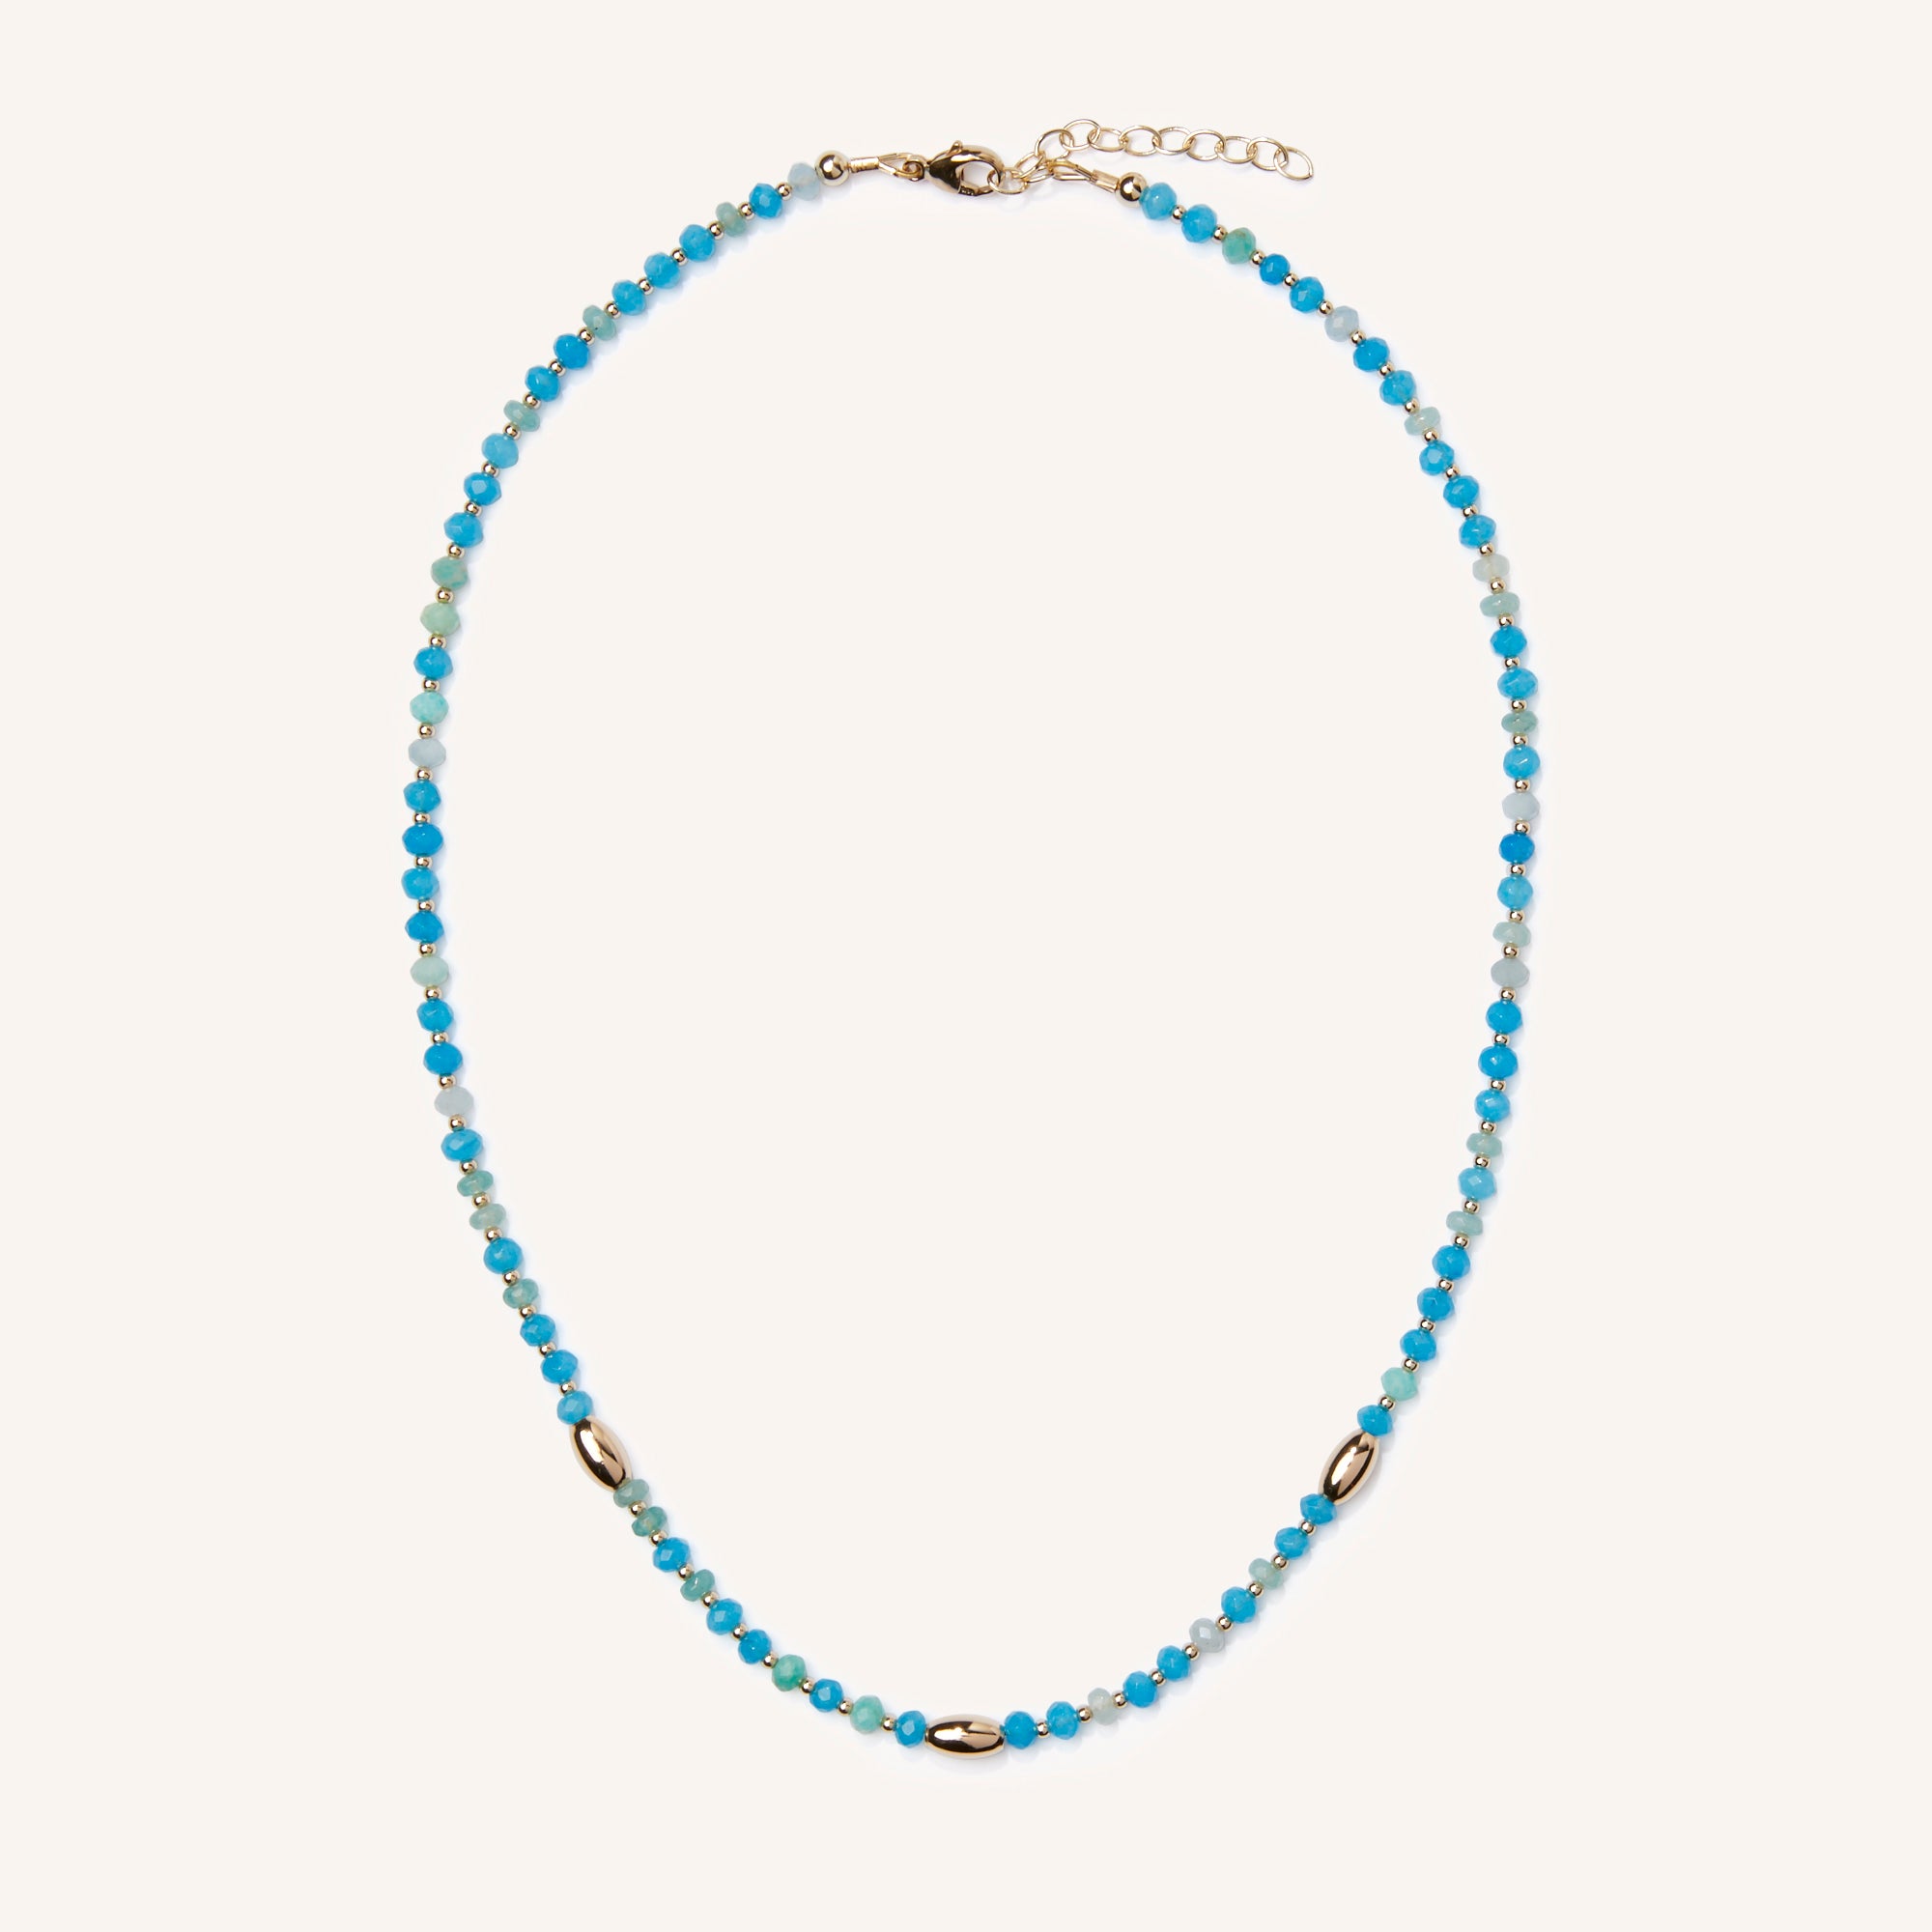 Isla necklace featuring amazonite, aquamarine and quartz stones